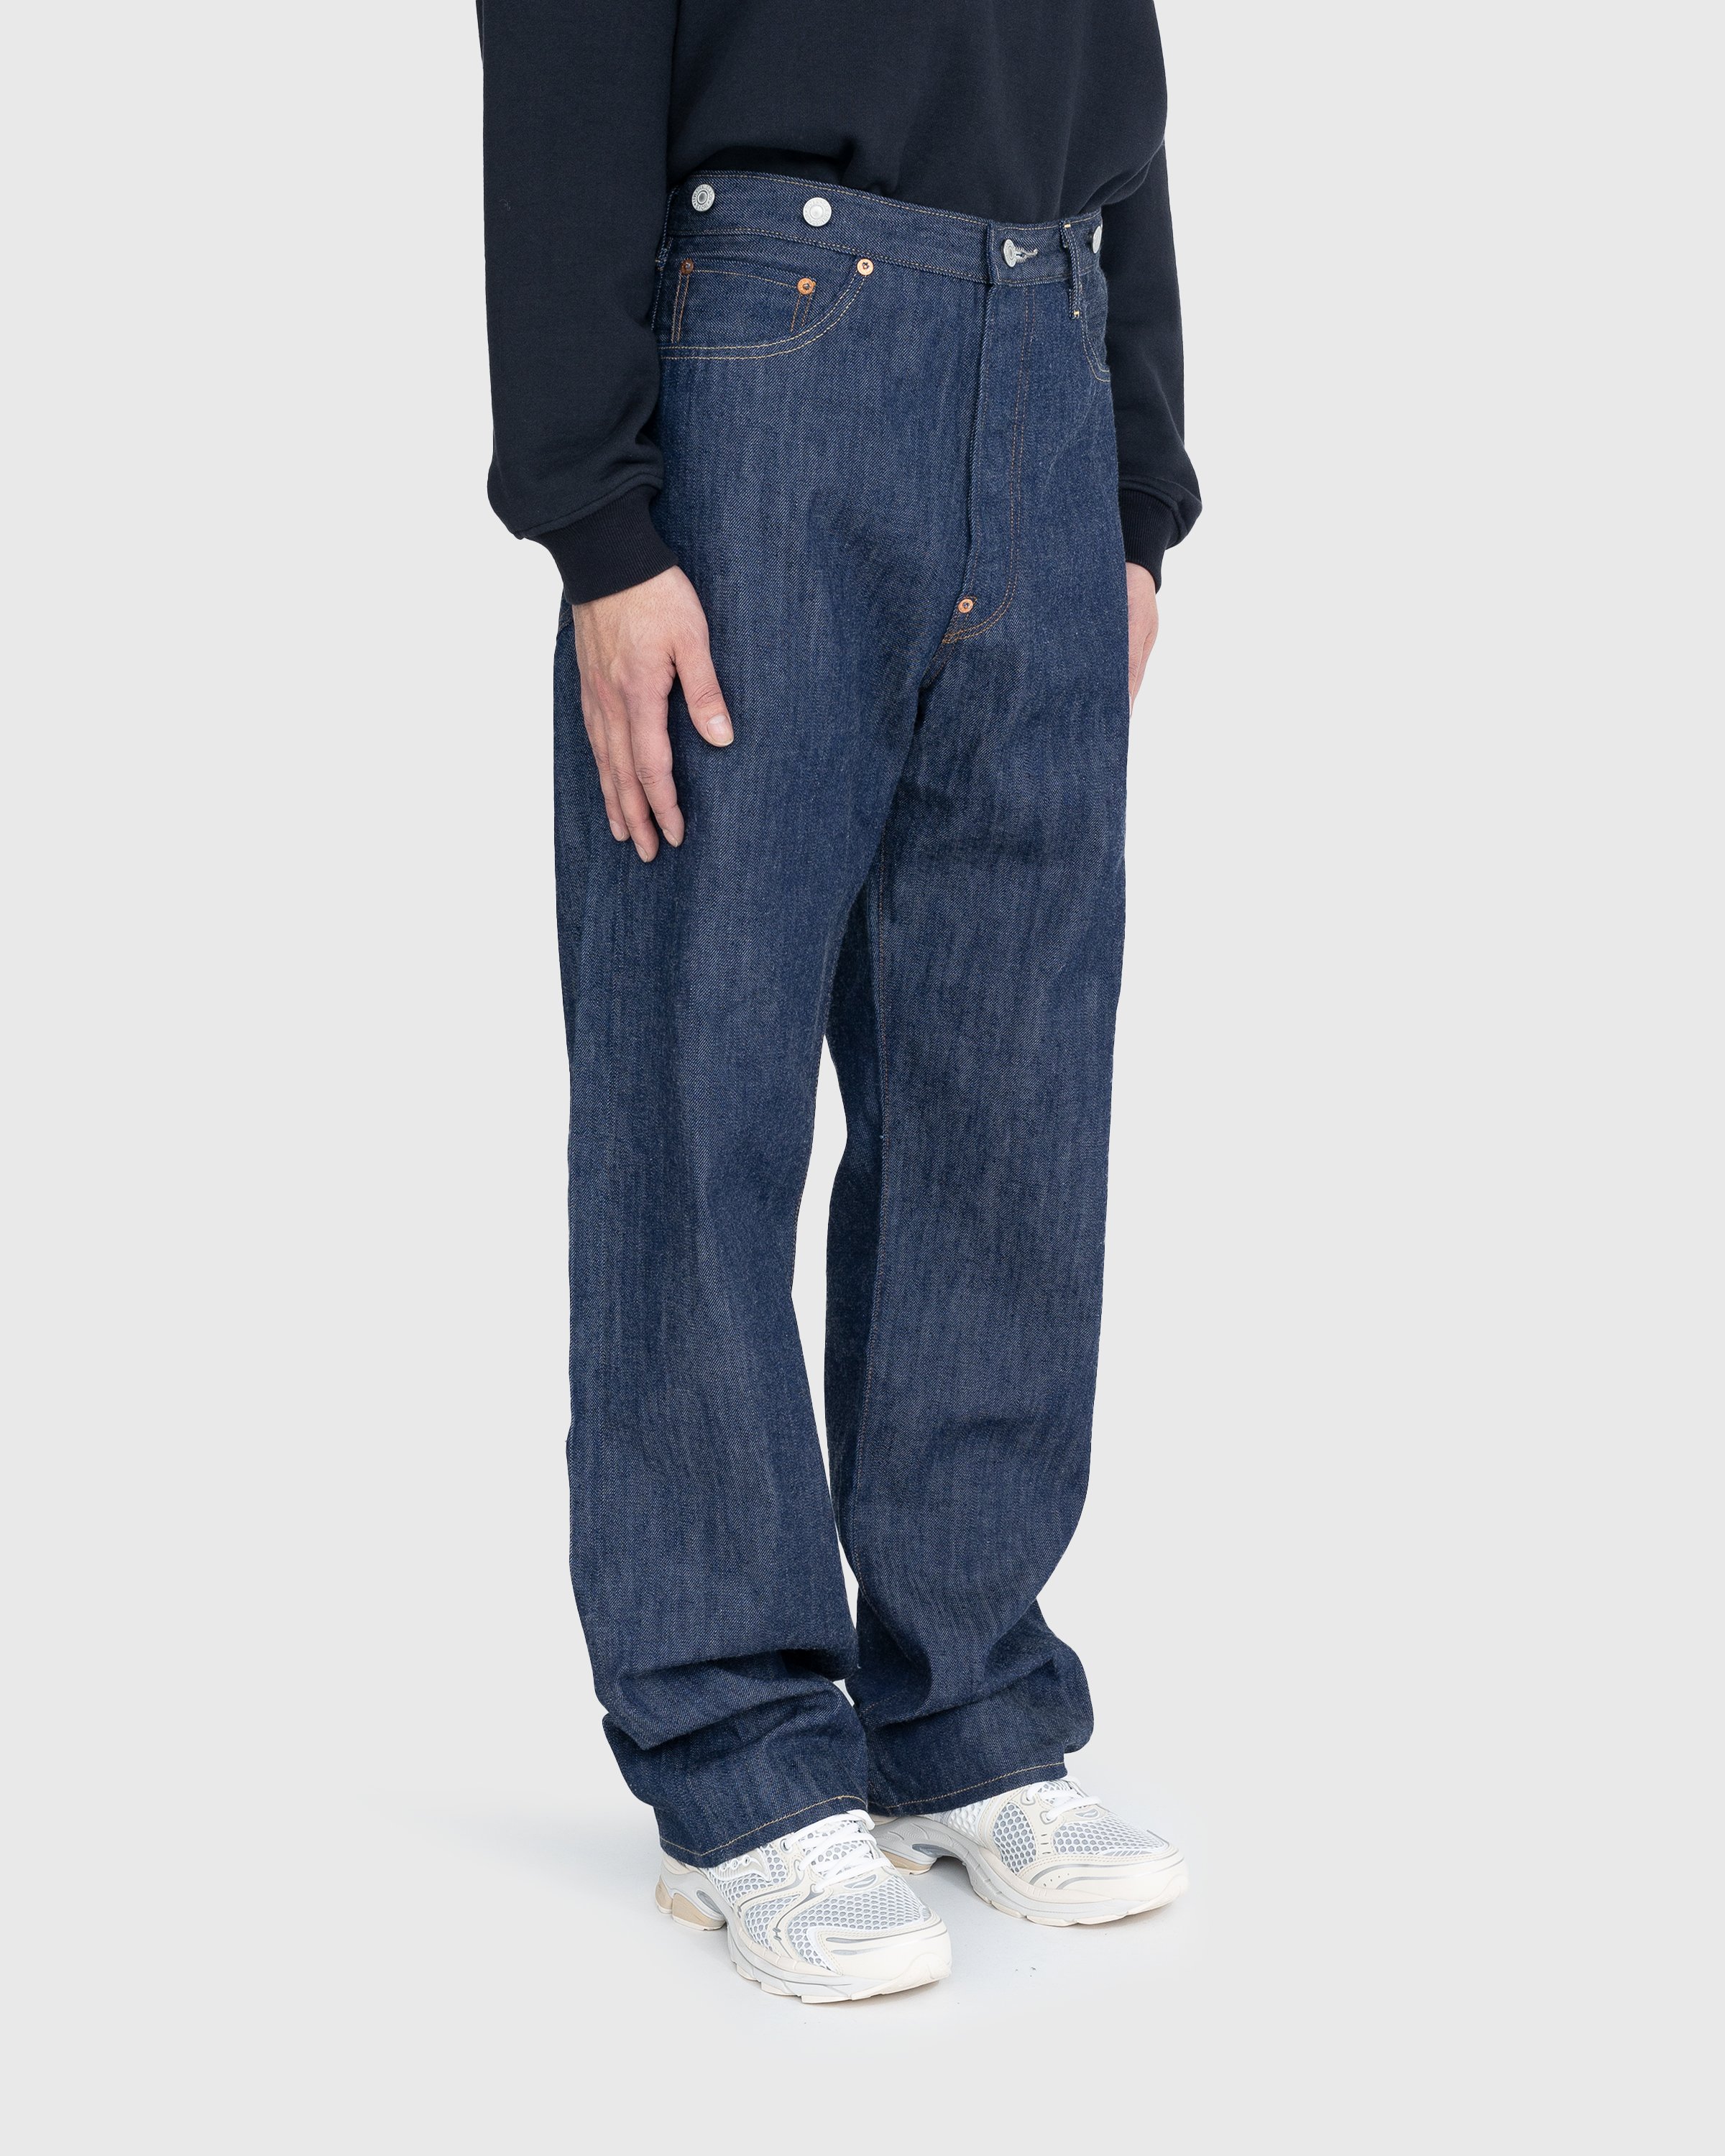 Levi's - 1922 501 Jeans Dark Indigo Flat Finish - Clothing - Blue - Image 5